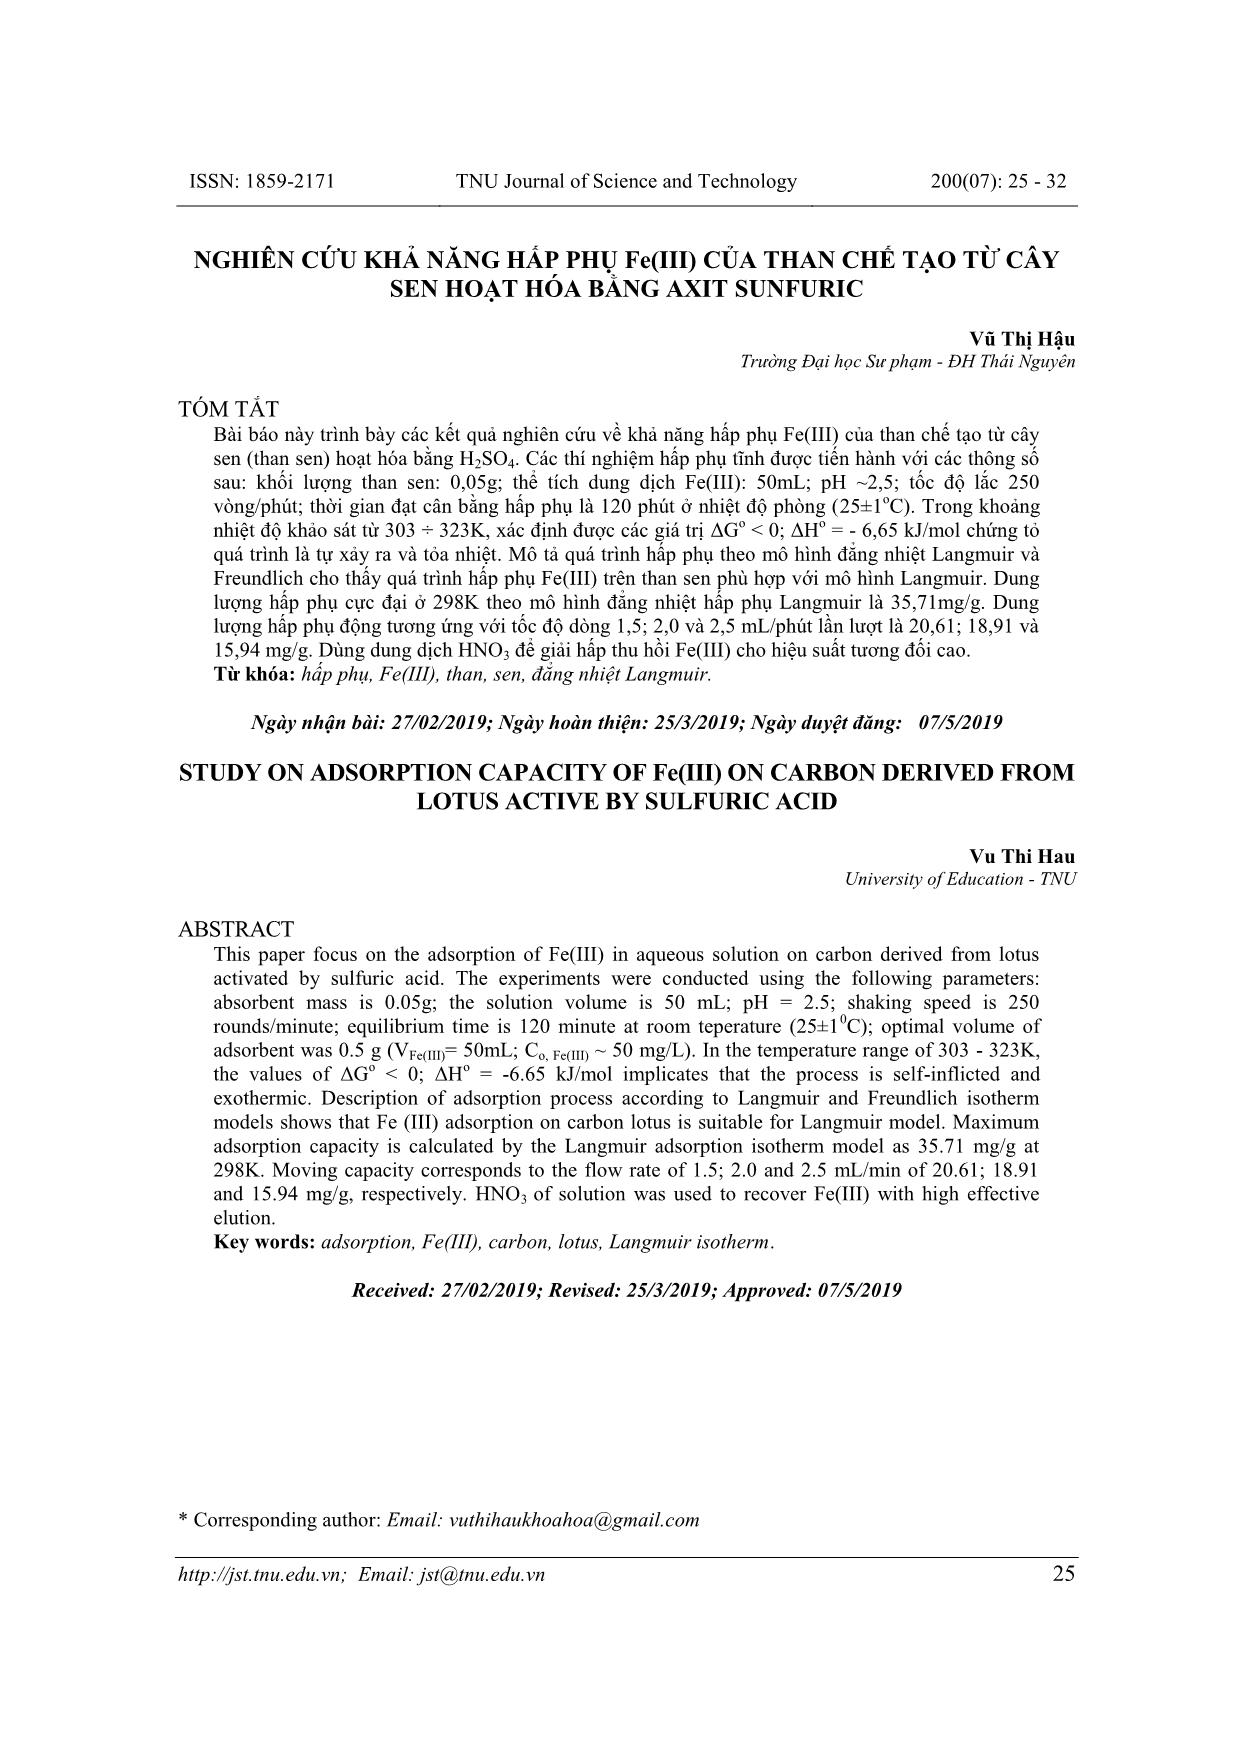 Nghiên cứu khả năng hấp phụ Fe(III) của than chế tạo từ cây sen hoạt hóa bằng Axit Sunfuric trang 1